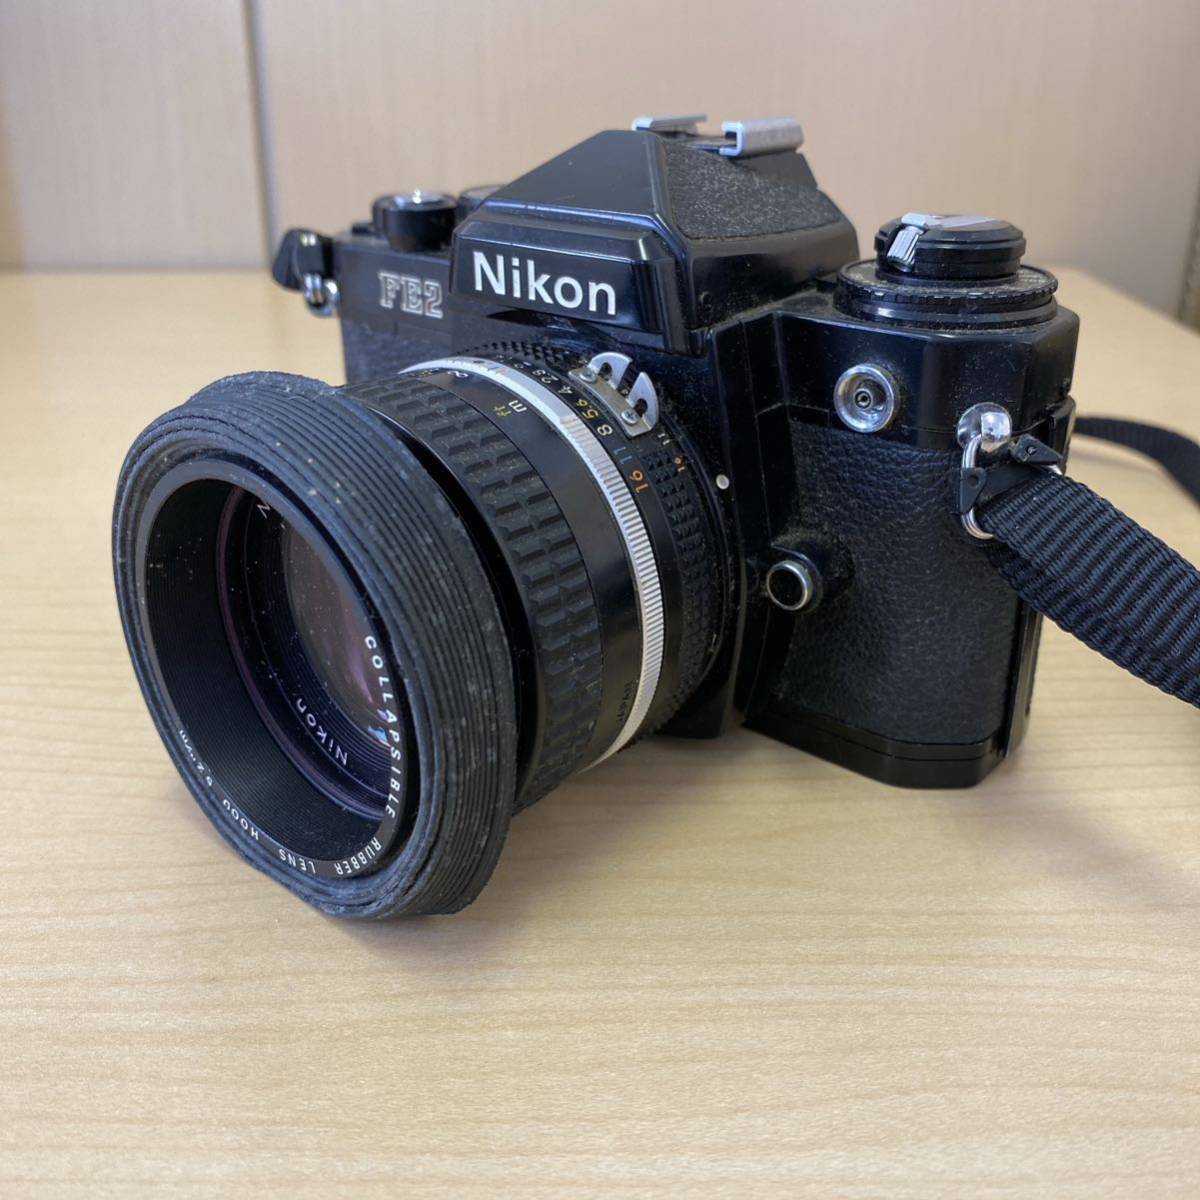 TS1020⑲】Nikon FE2 一眼レフ フィルムカメラ ブラック 黒 長期保管品